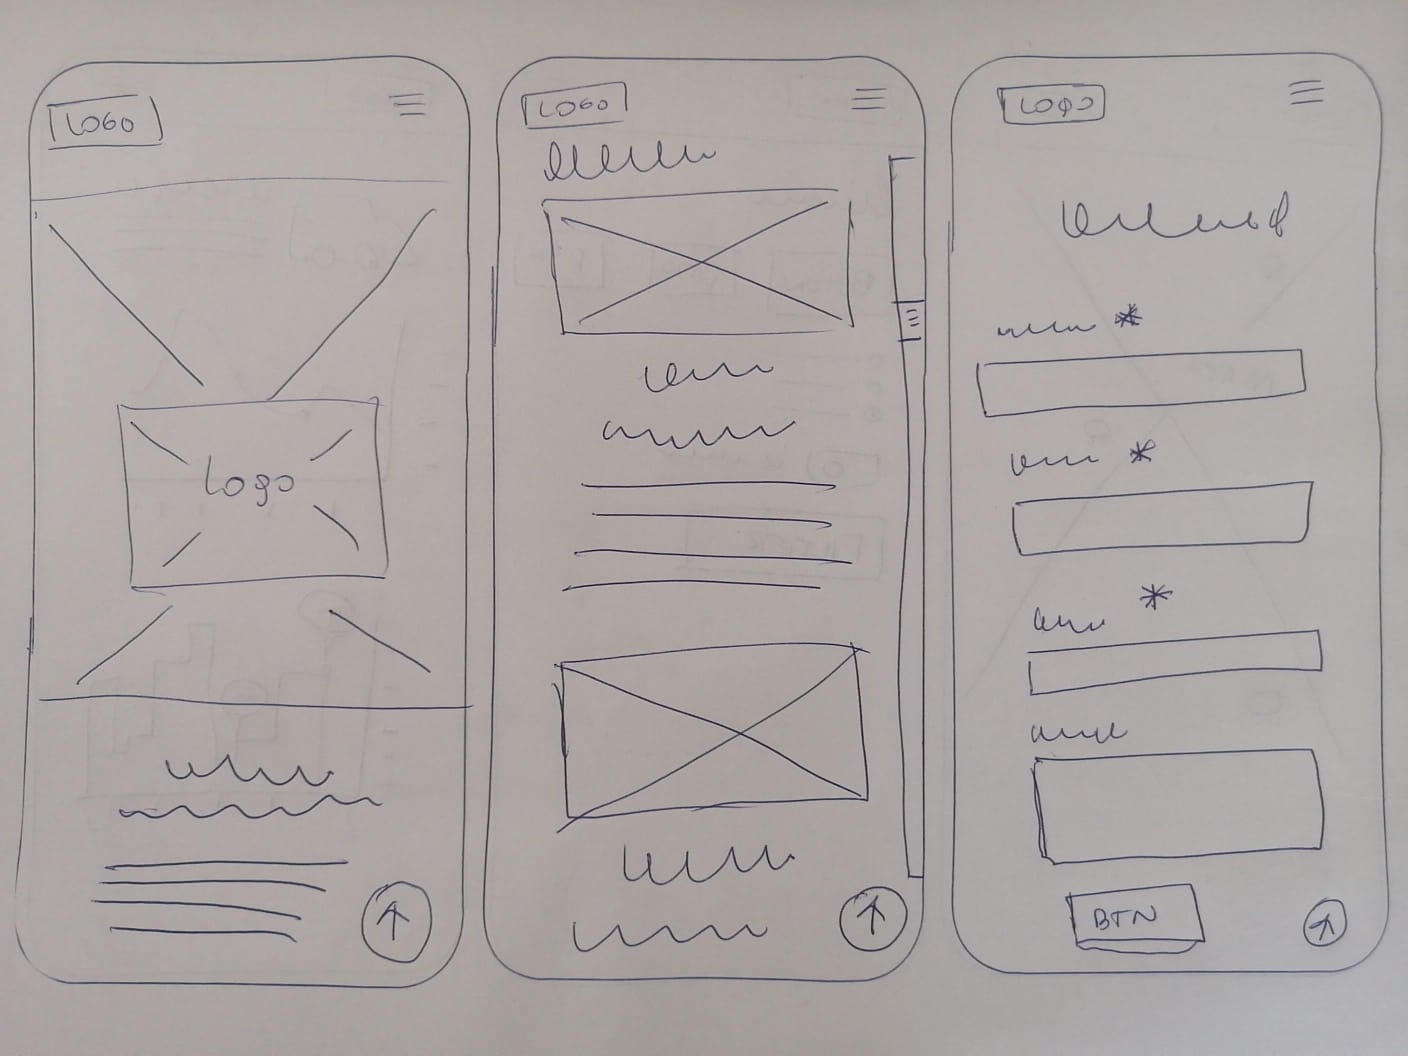 Diseño de prototipos de papel para validar la experiencia de usuario.